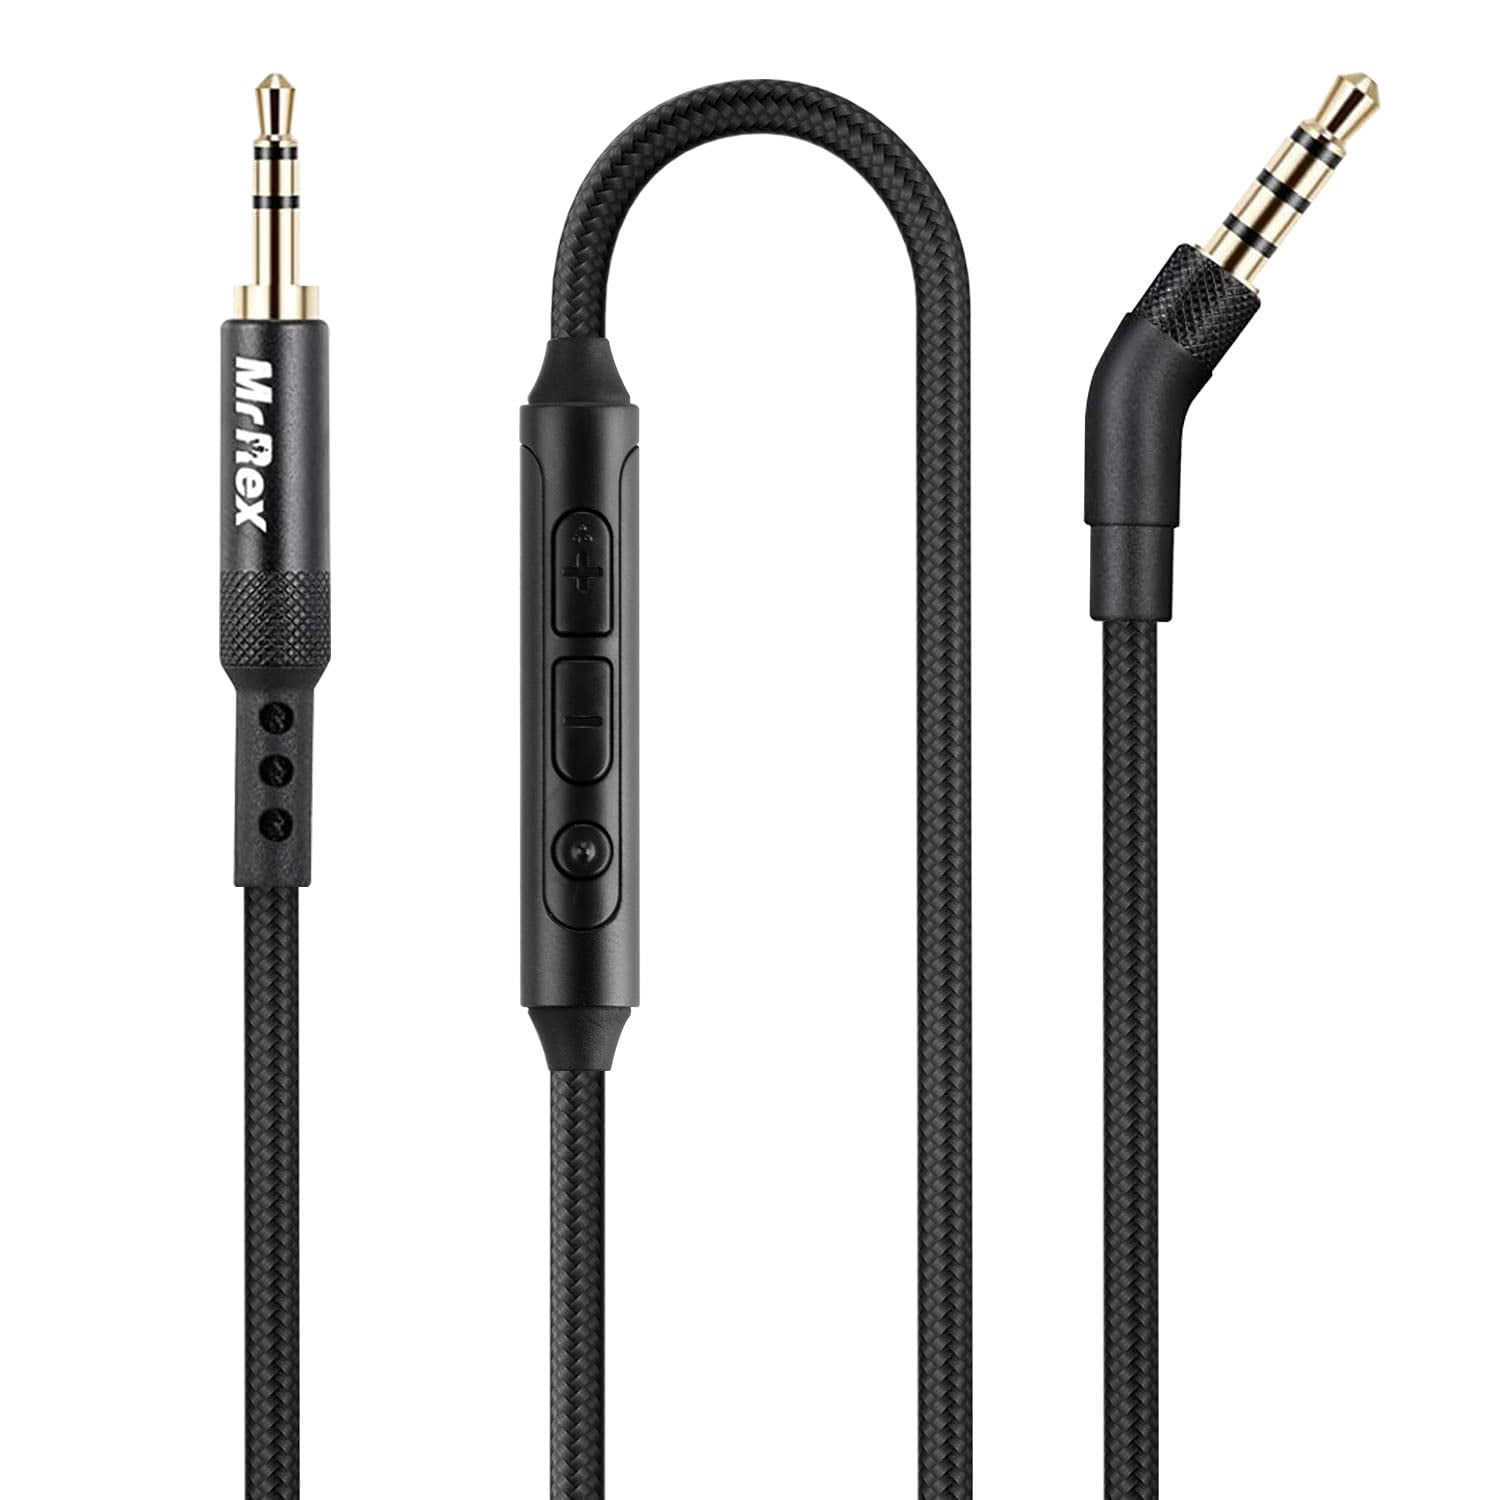 Ung gå på indkøb Afhængig Replacement Audio Cable Cord with Mic for Bose 700 QuietComfort QC35 QC35II  QC25 QC45 Headphones, JBL E45BT - Walmart.com